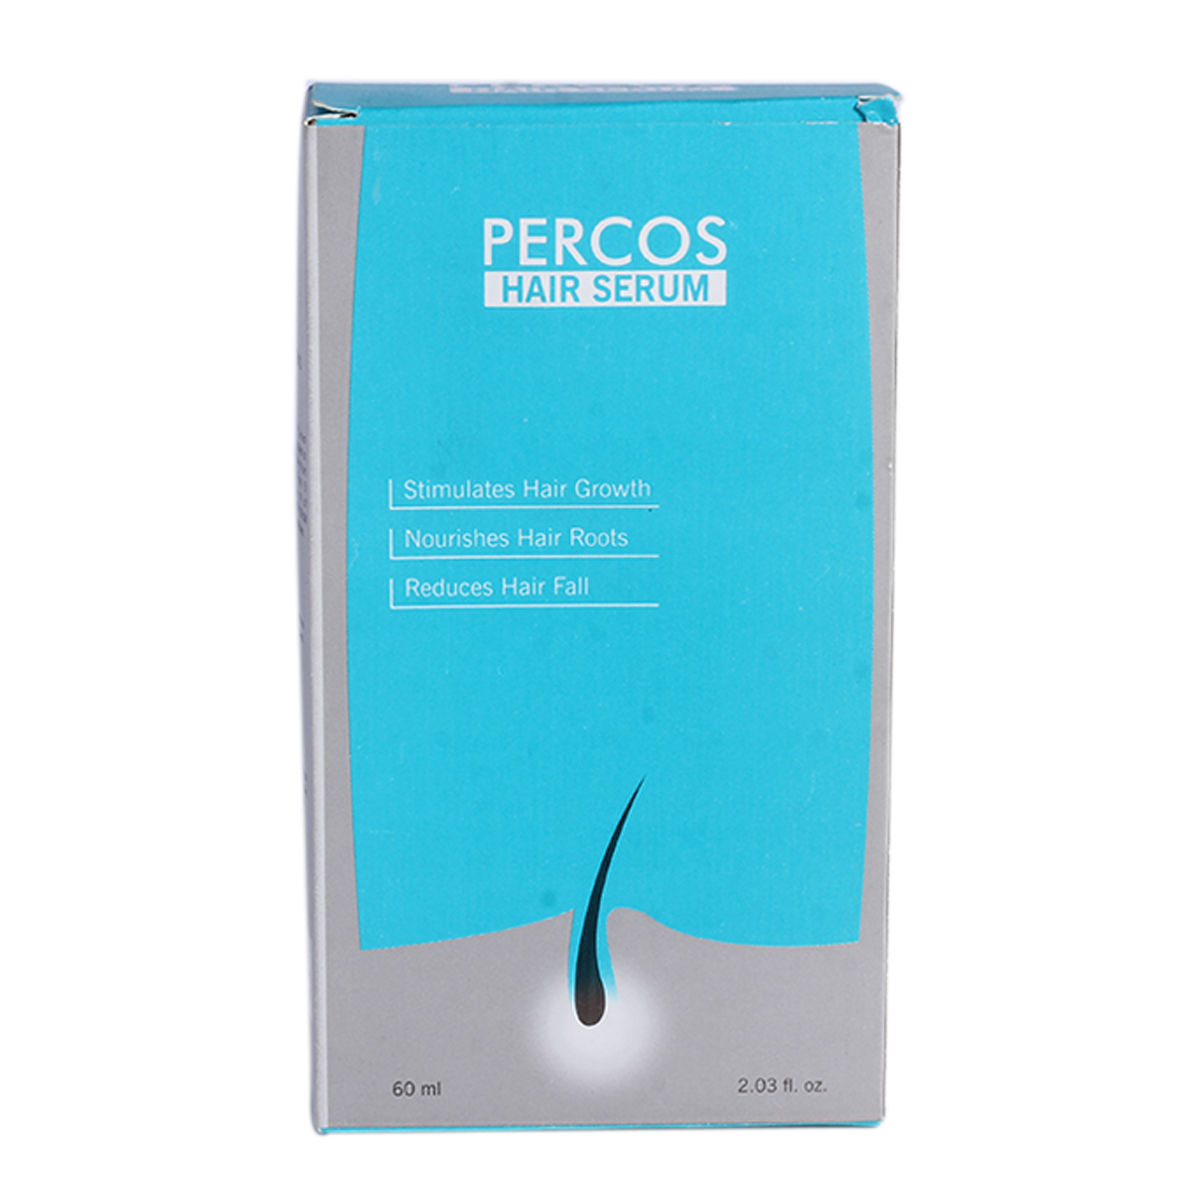 Buy Percos Hair Serum, 60 ml Online